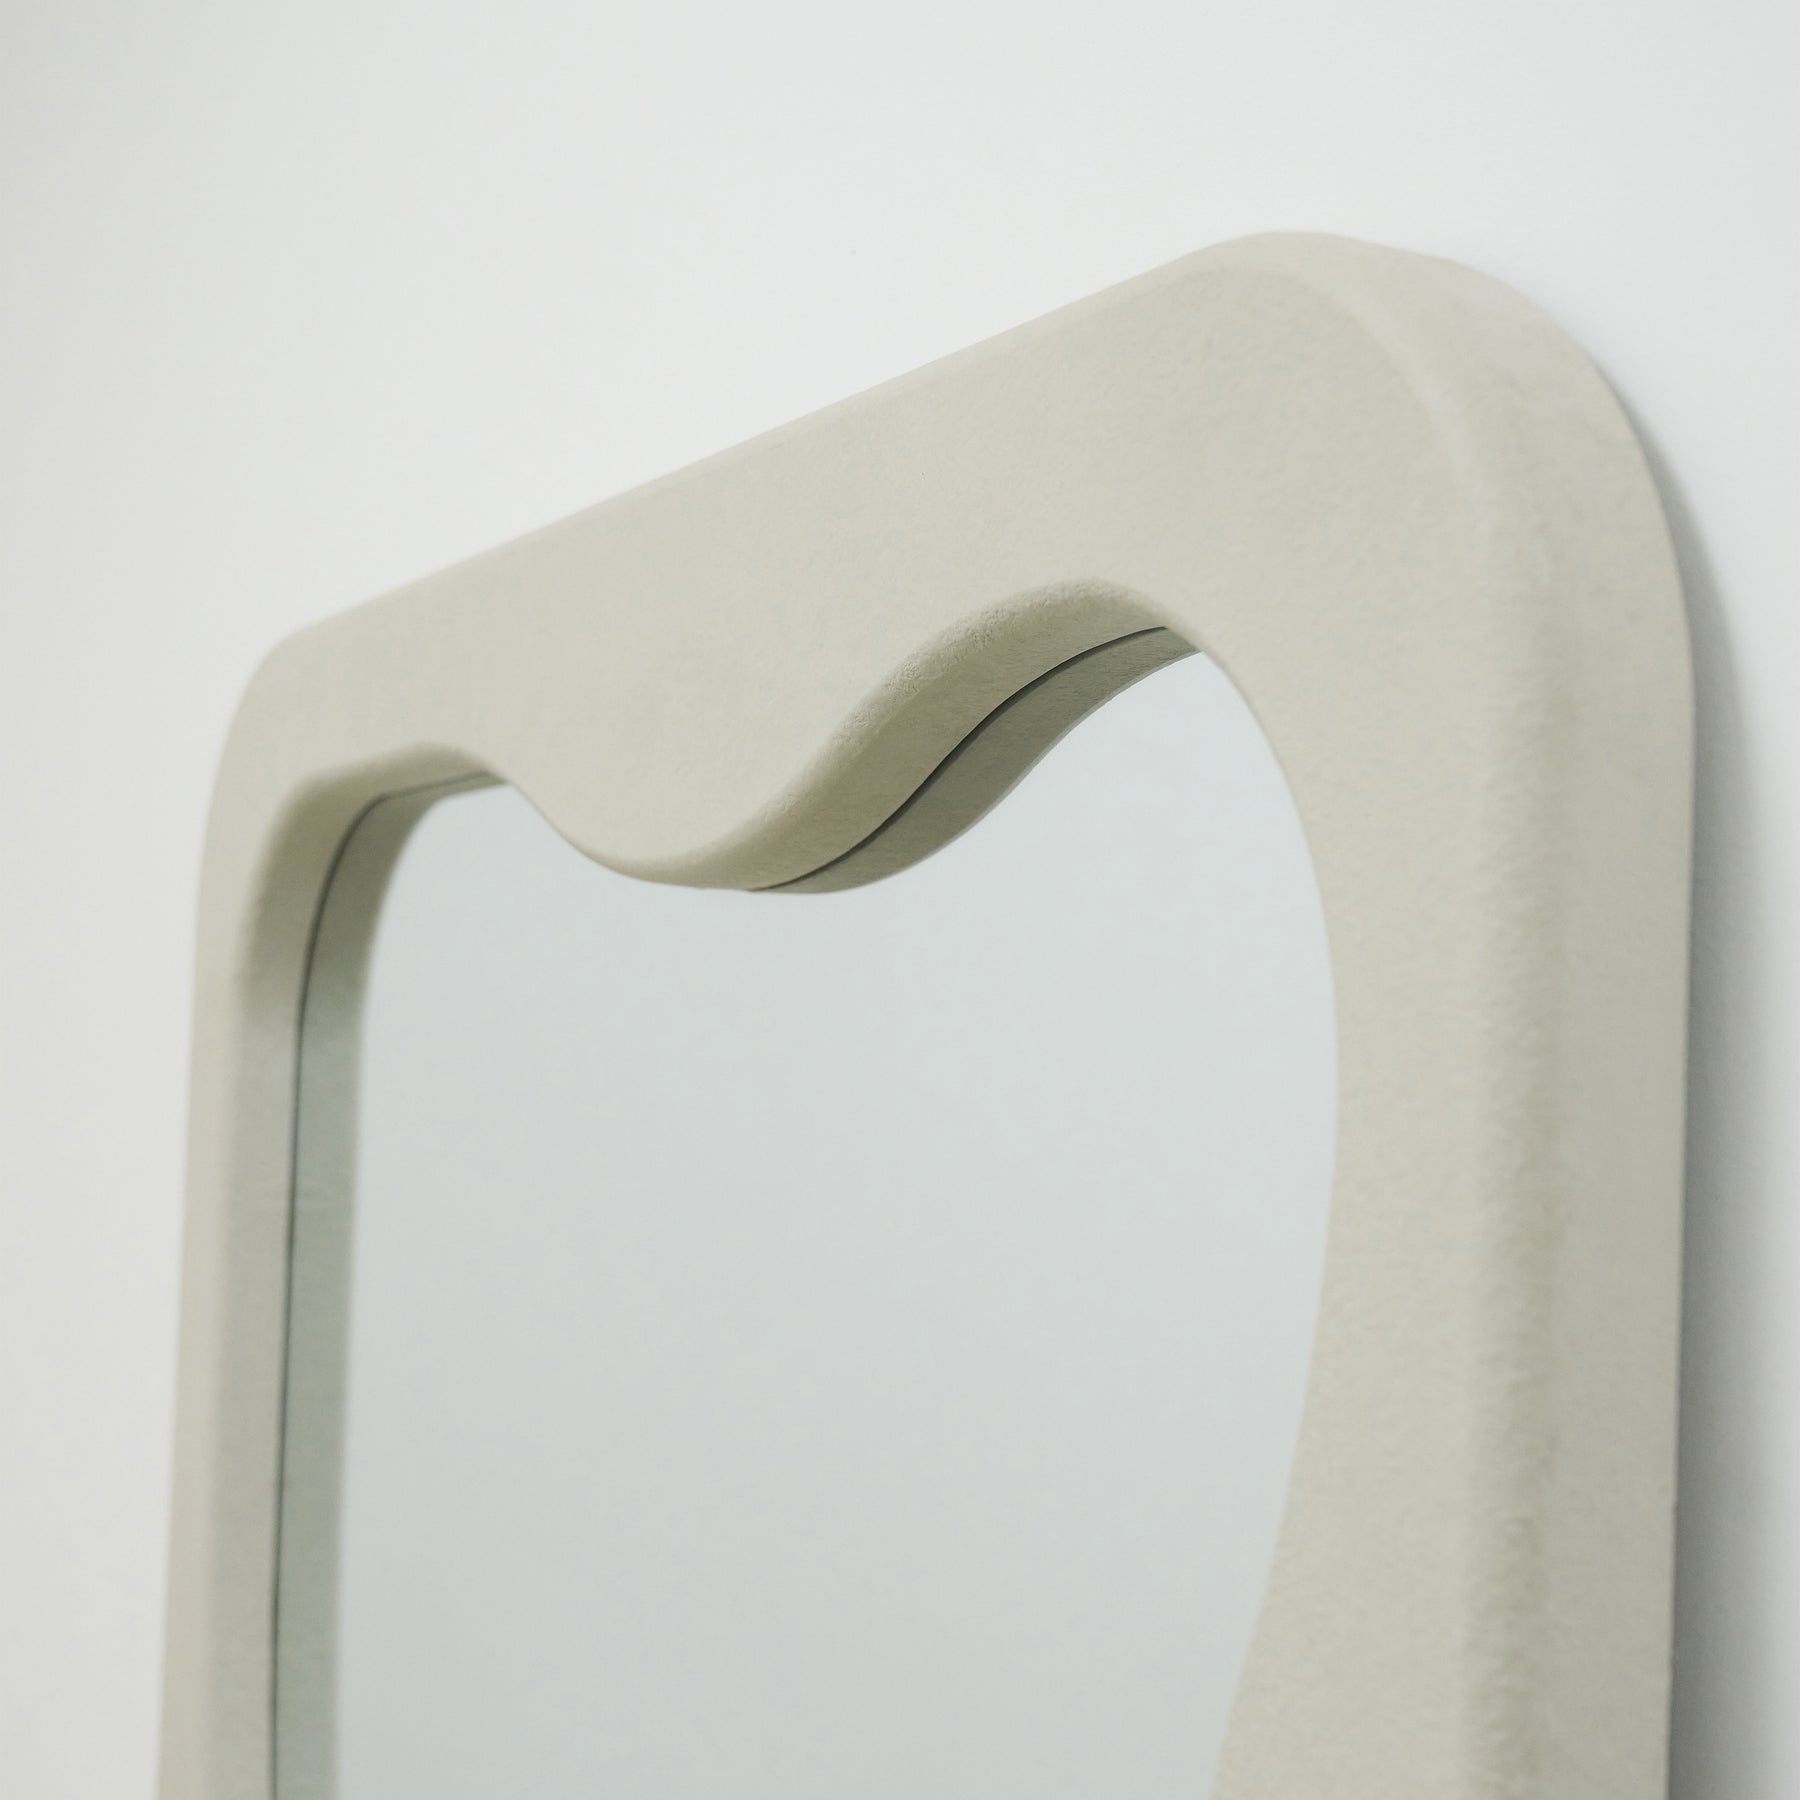 Full Length Irregular Concrete Mirror detail shot of irregular mirror frame top